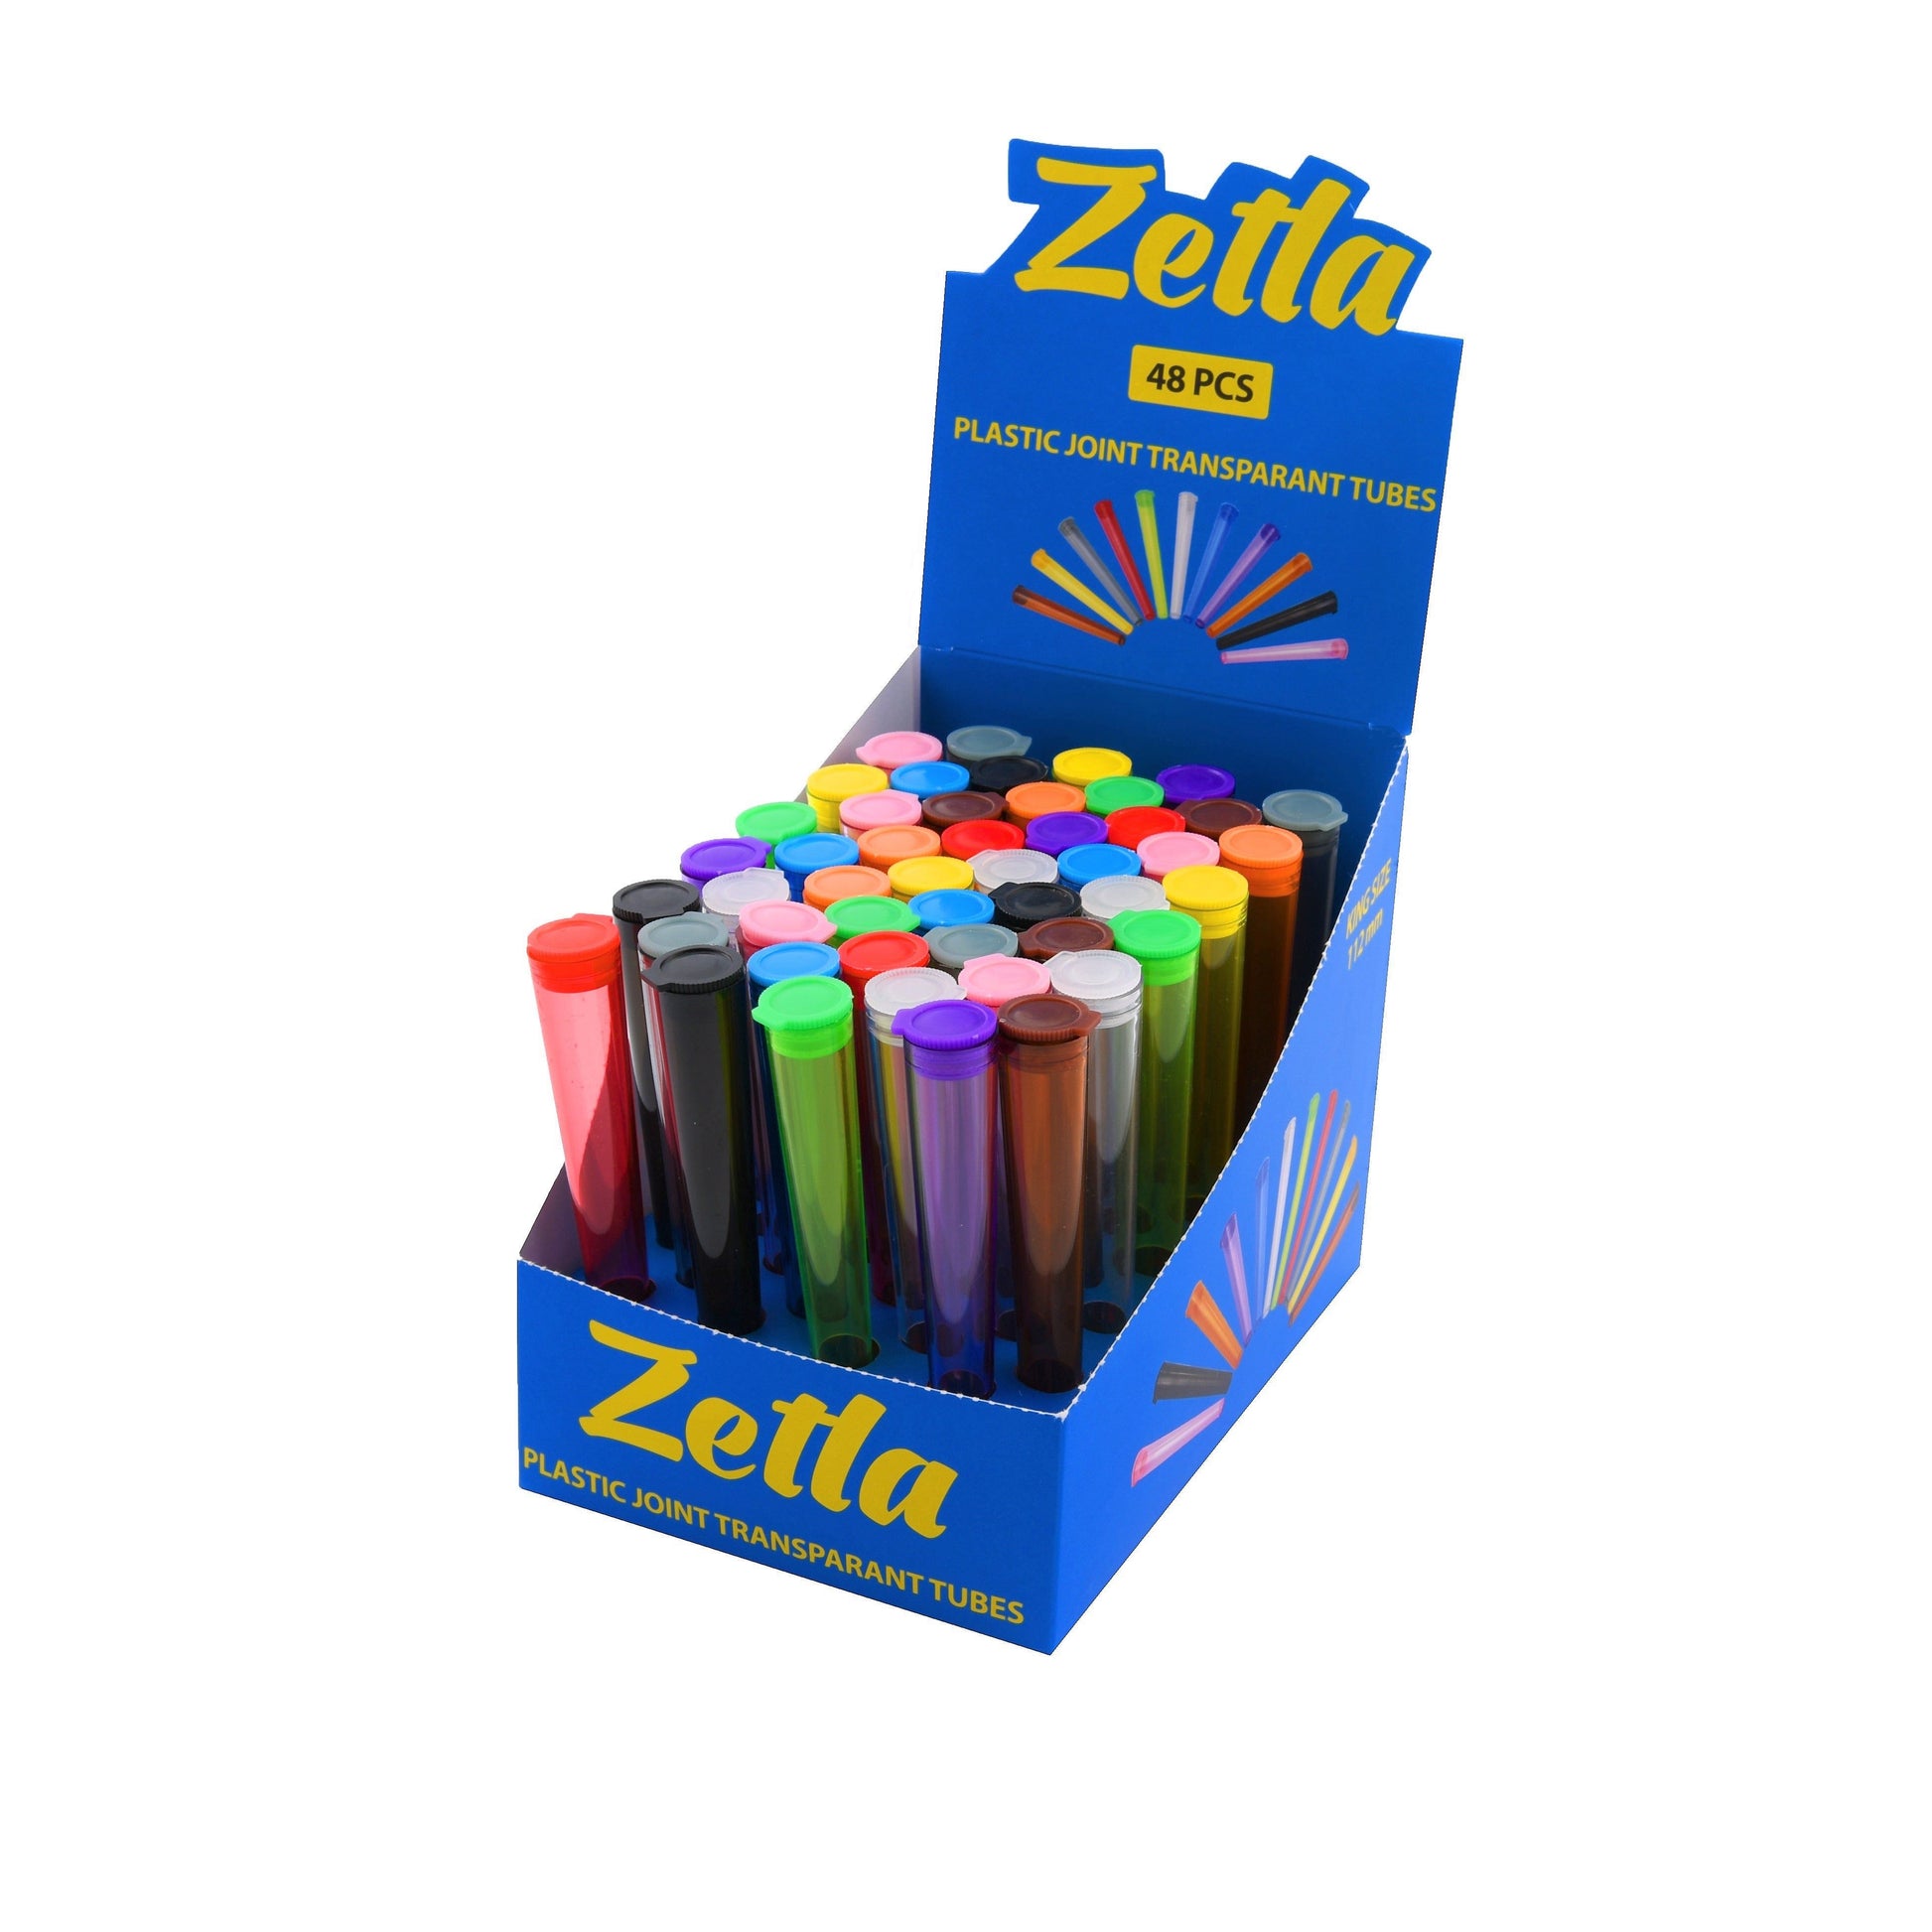 Zetla Plastic Joint Tubes Transparent (48 Pcs) - Zetla